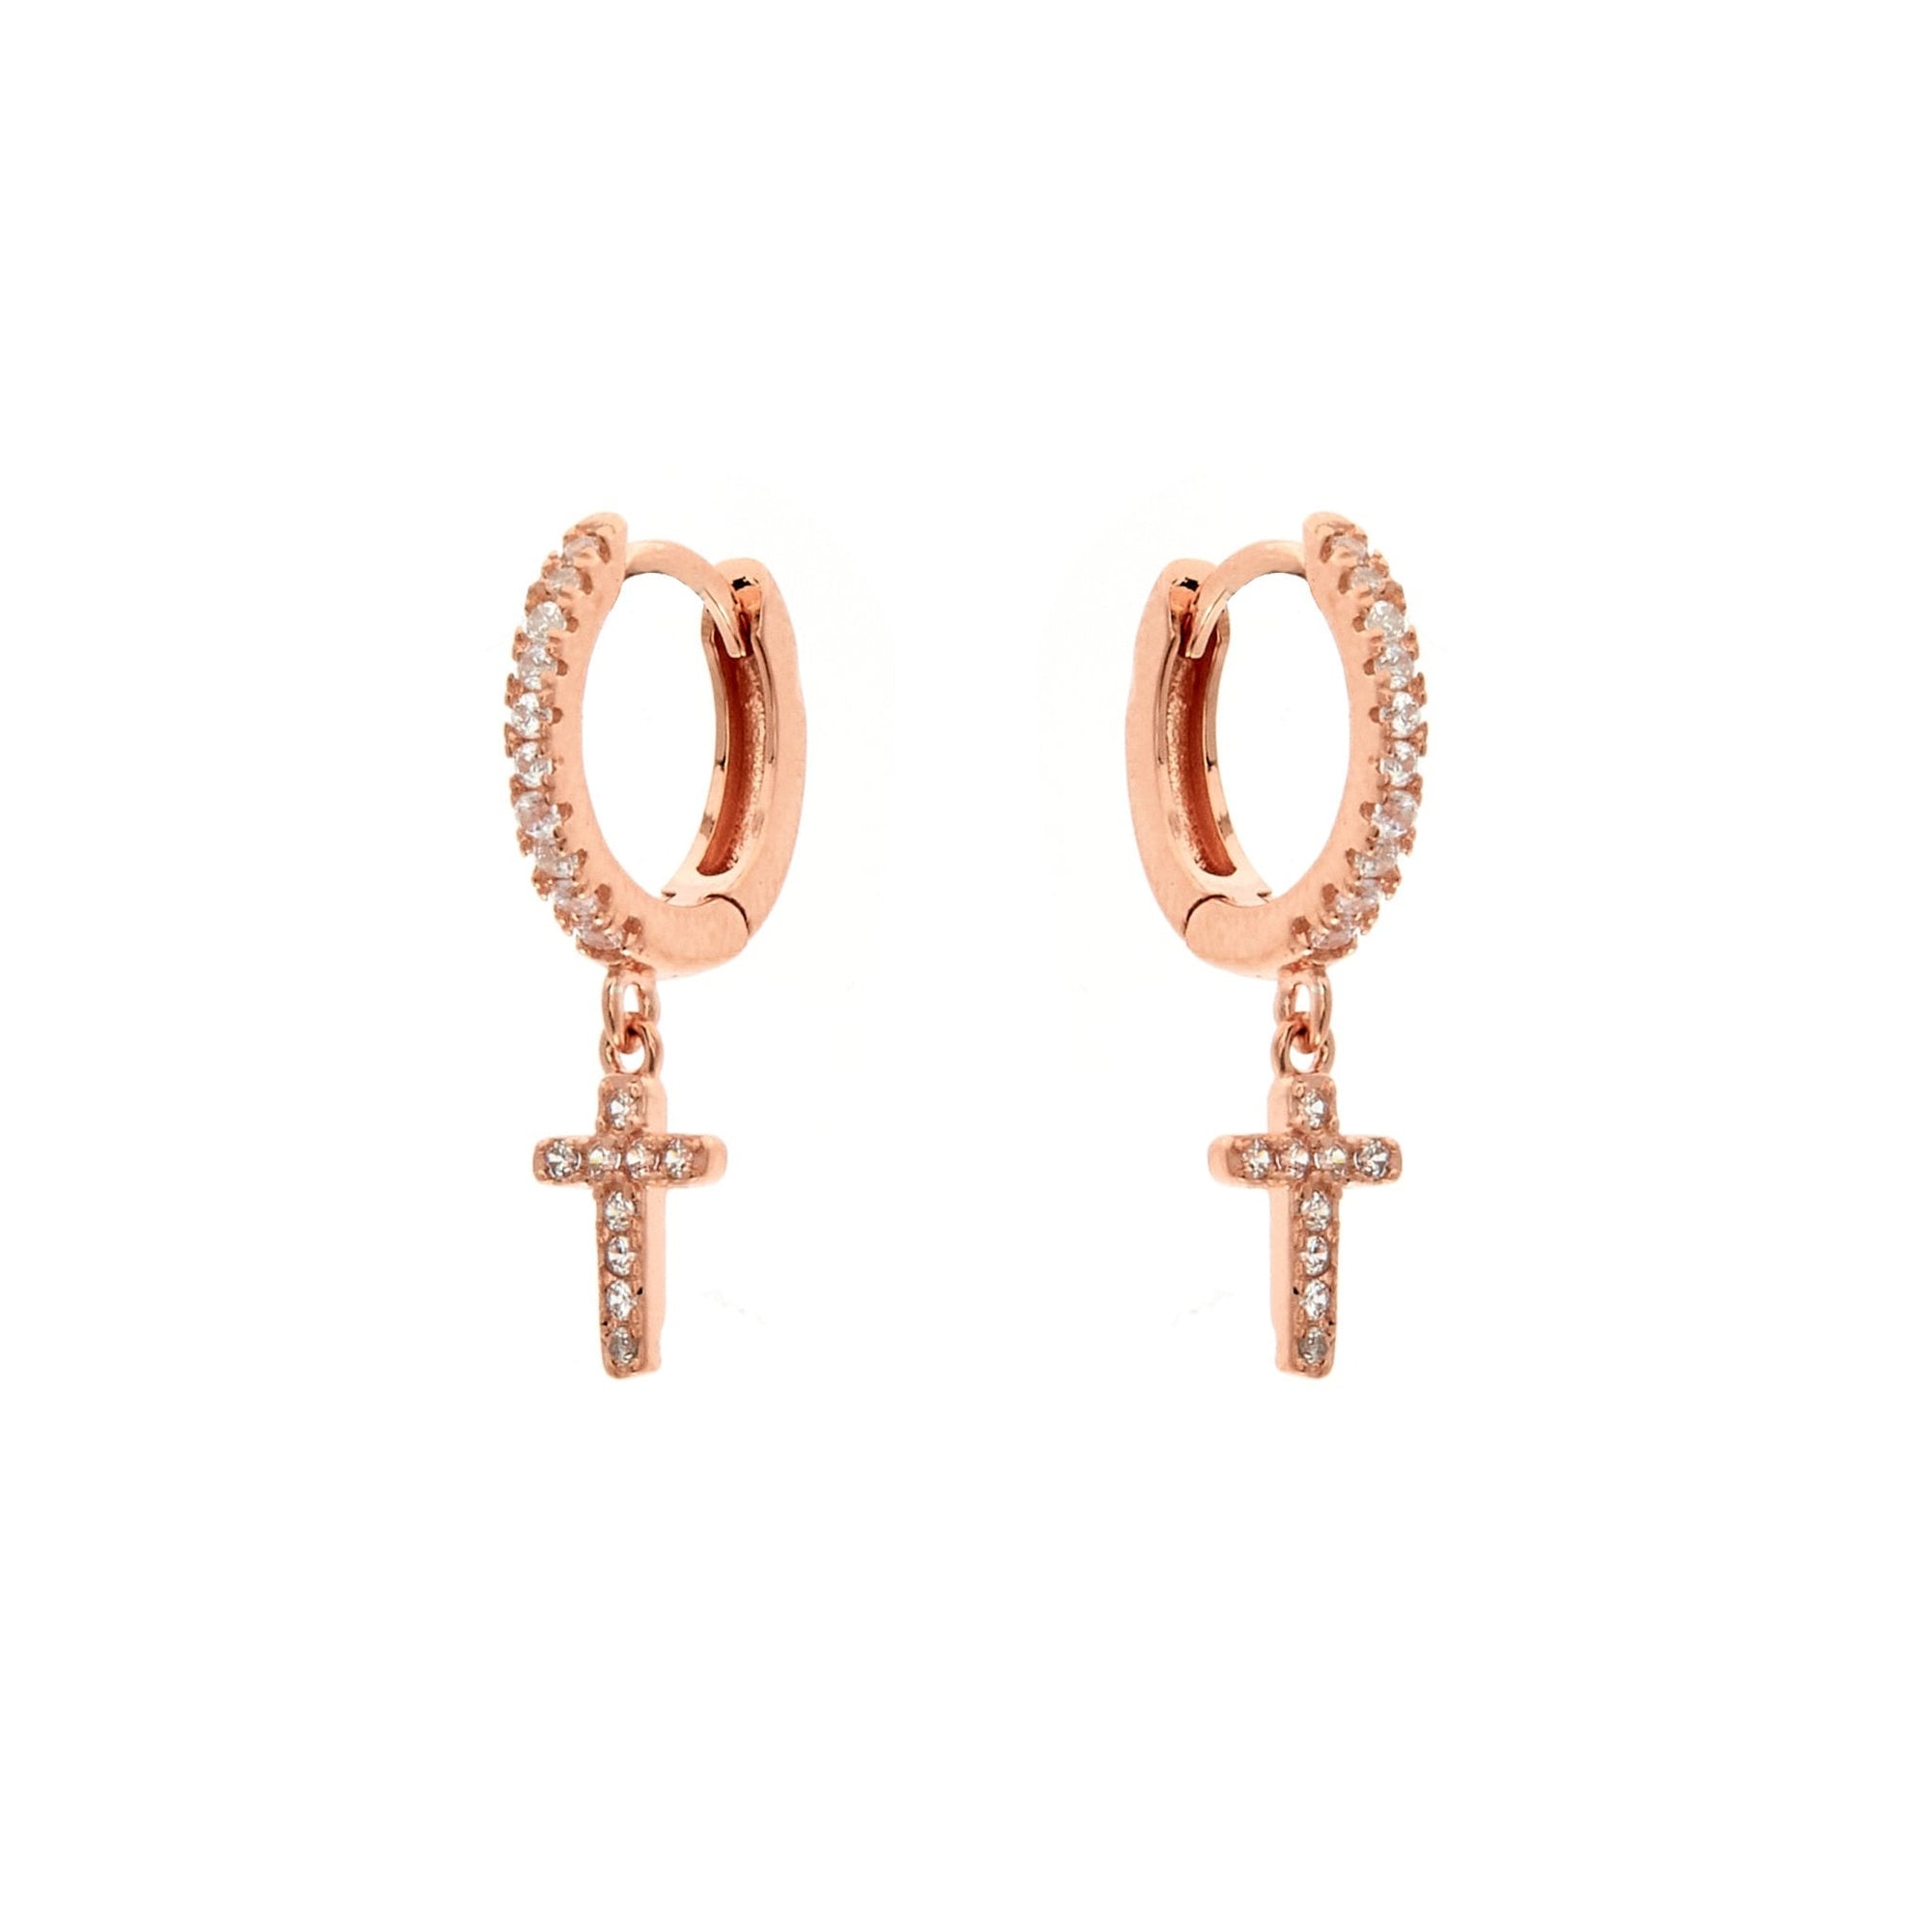 Duo Jewellery Earrings Yellow Gold Duo Cross dazzle earrings